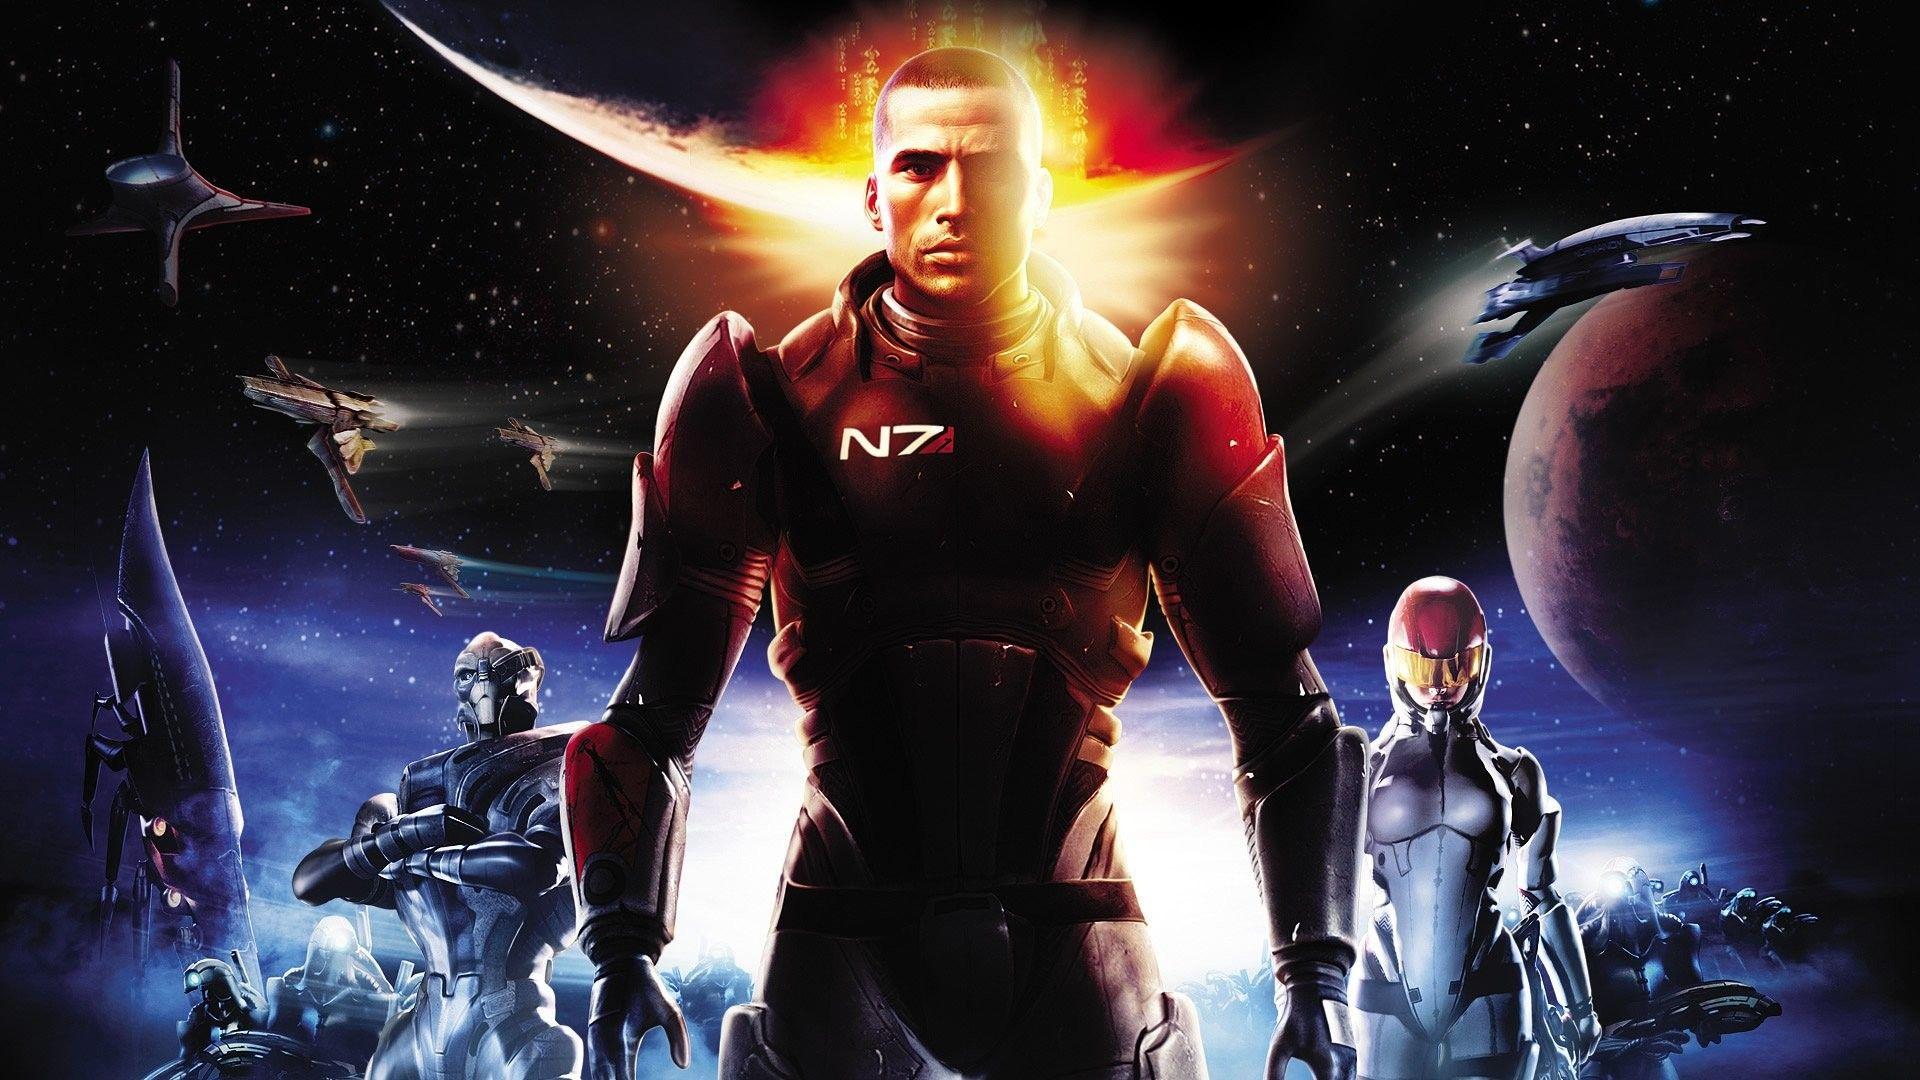 Mass Effect 3 Wallpapers  Top Free Mass Effect 3 Backgrounds   WallpaperAccess